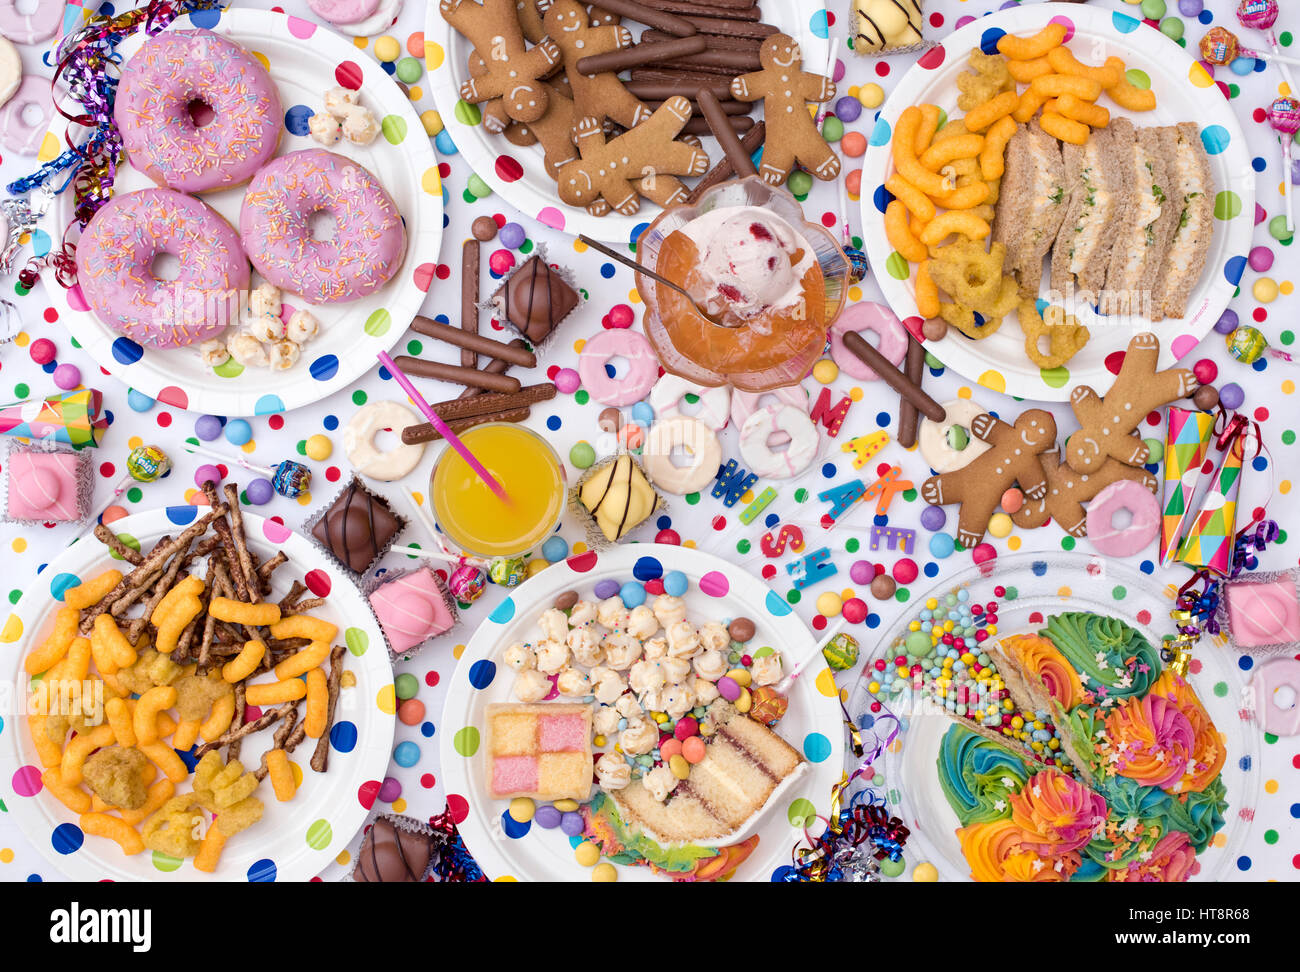 Kinder Party Essen einschließlich Sandwiches, Kuchen, Marmelade und Eis, Kekse, Chips, Süßigkeiten und Krapfen auf gepunktetem Hintergrund. Muster Stockfoto